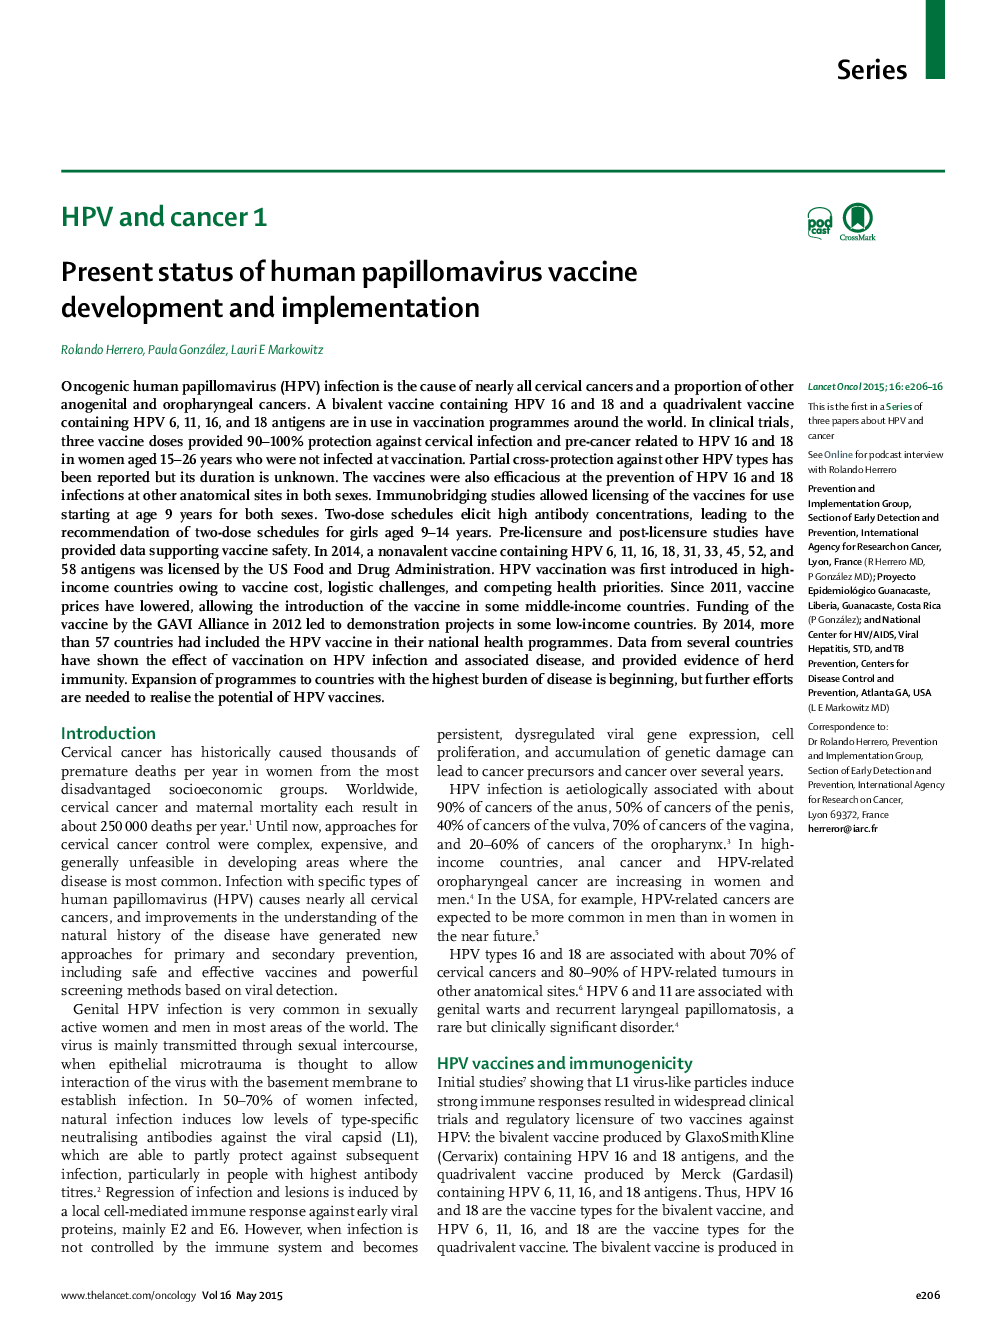 وضعیت فعلی توسعه و اجرای واکسن پاپیلومای انسانی 